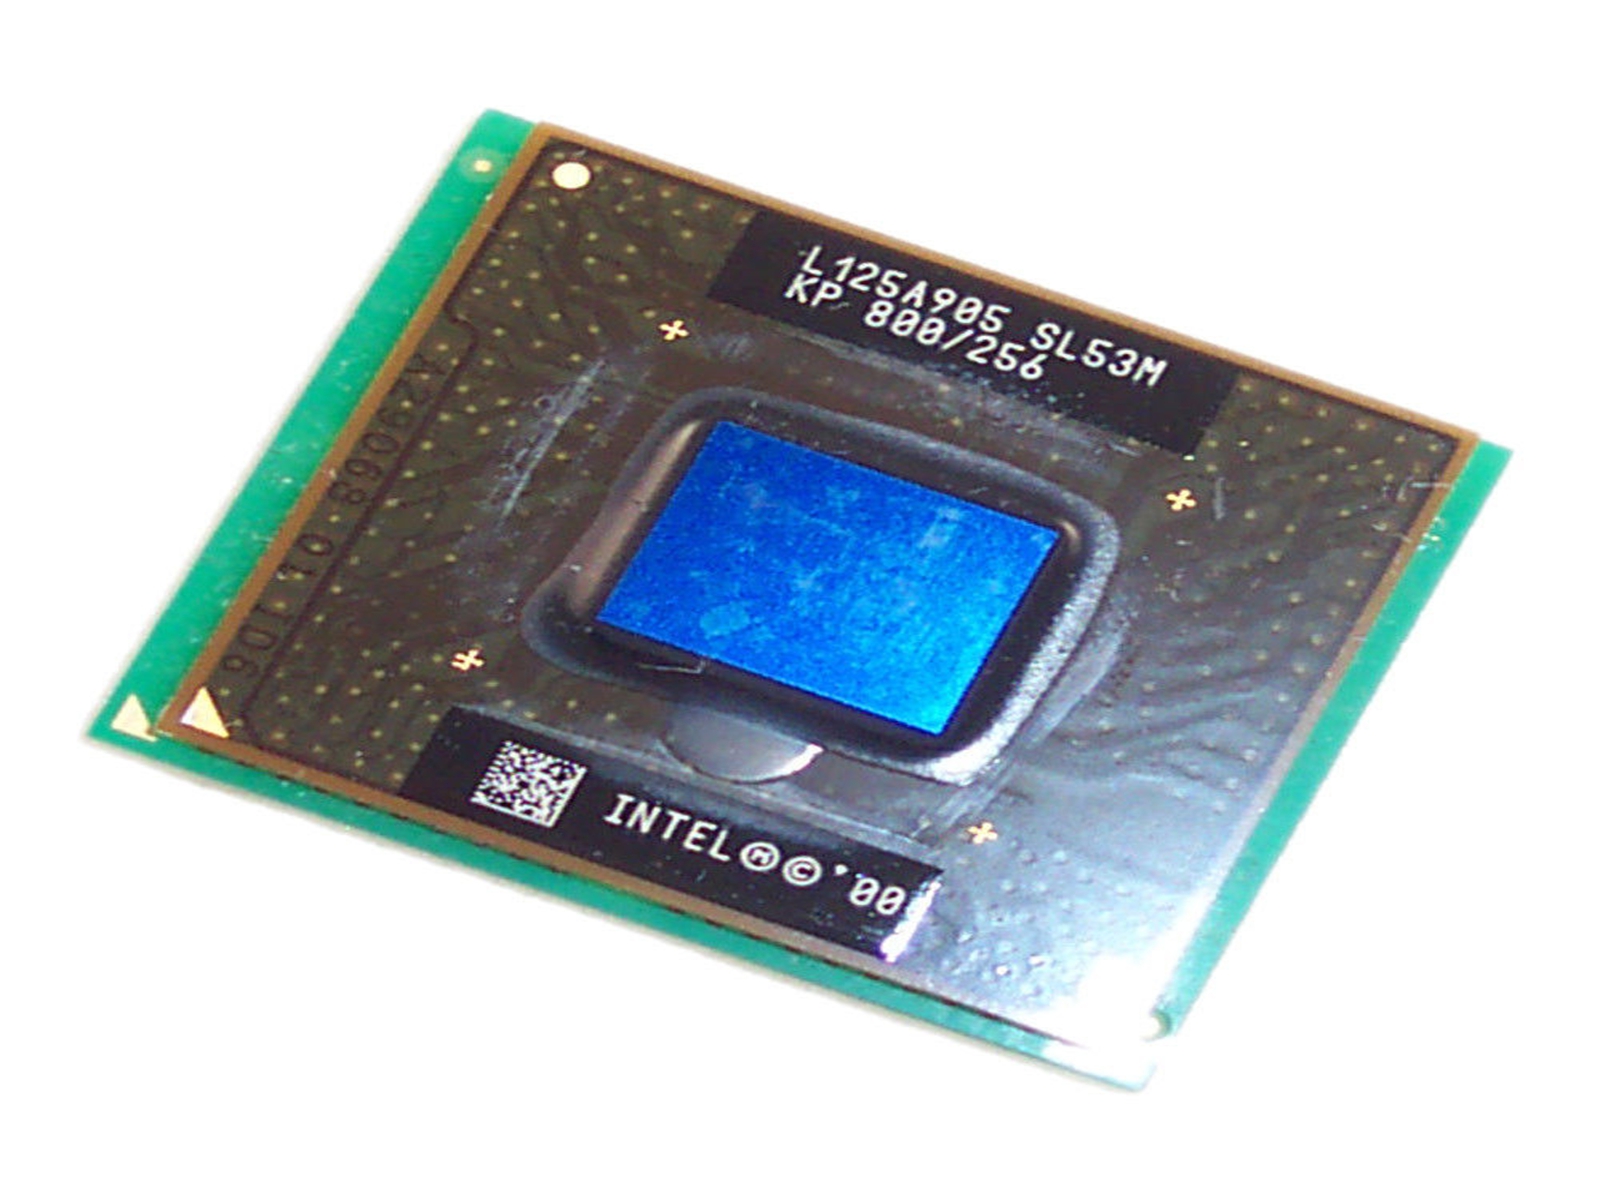 Intel Pentium III CPU